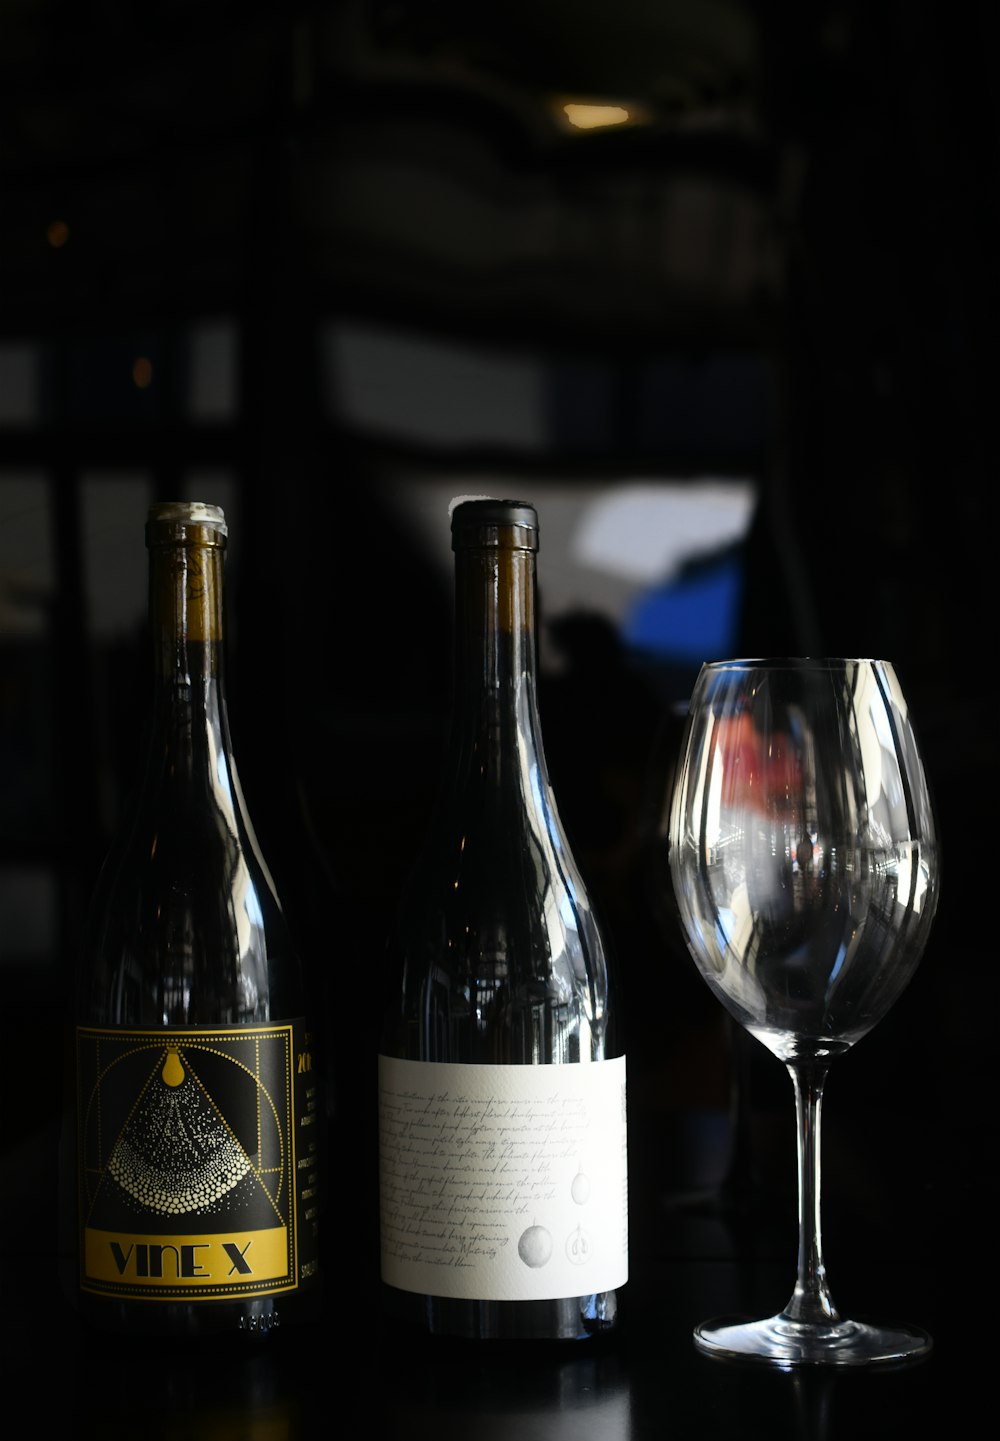 wine bottle beside wine glass